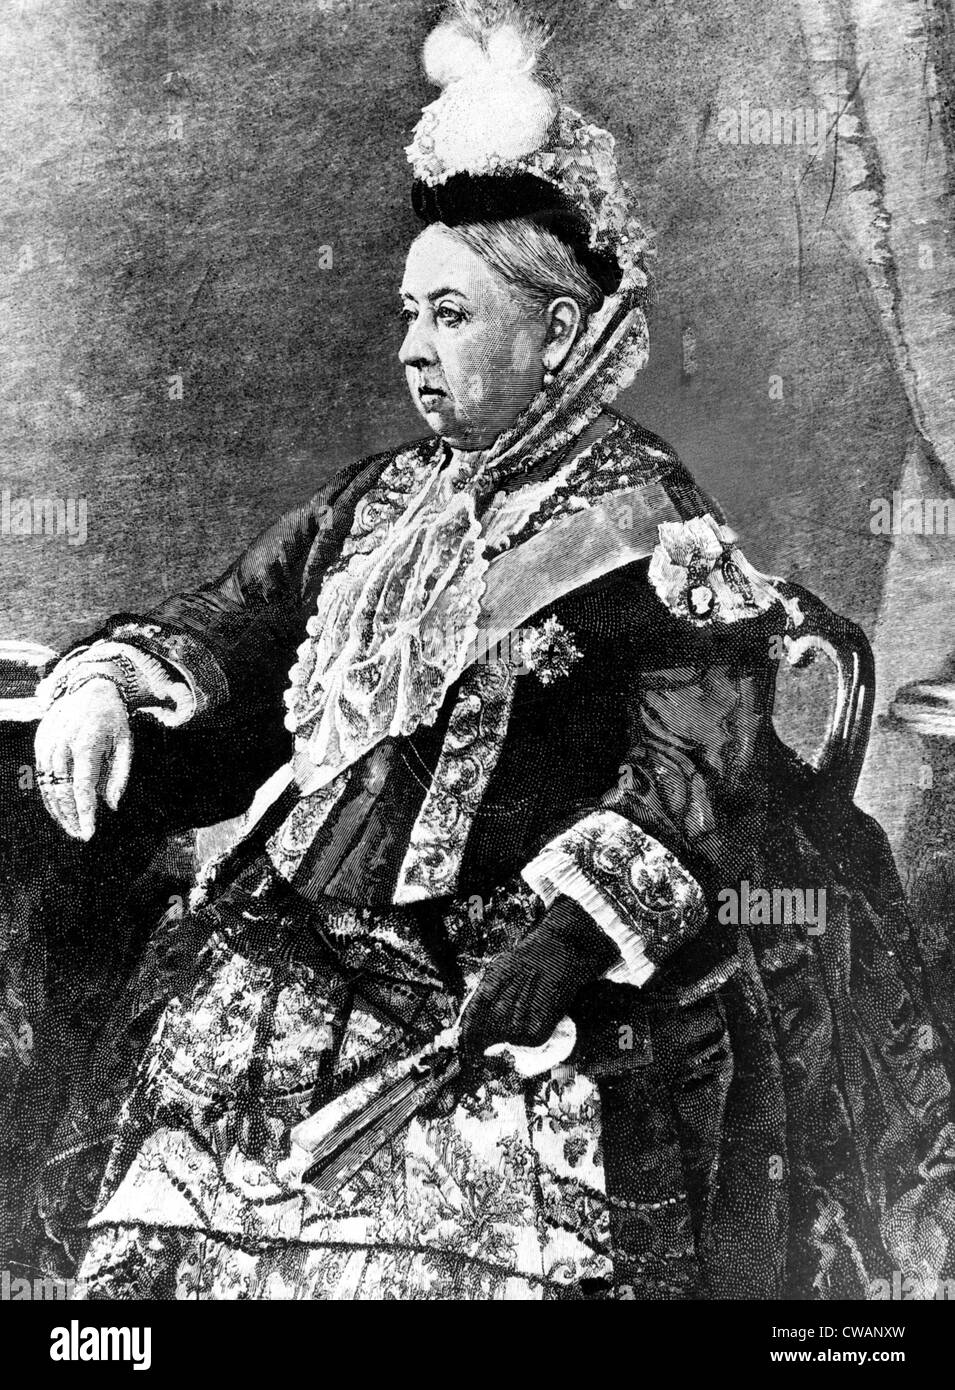 Königin Victoria von England, 1887. Höflichkeit: CSU Archive / Everett Collection Stockfoto